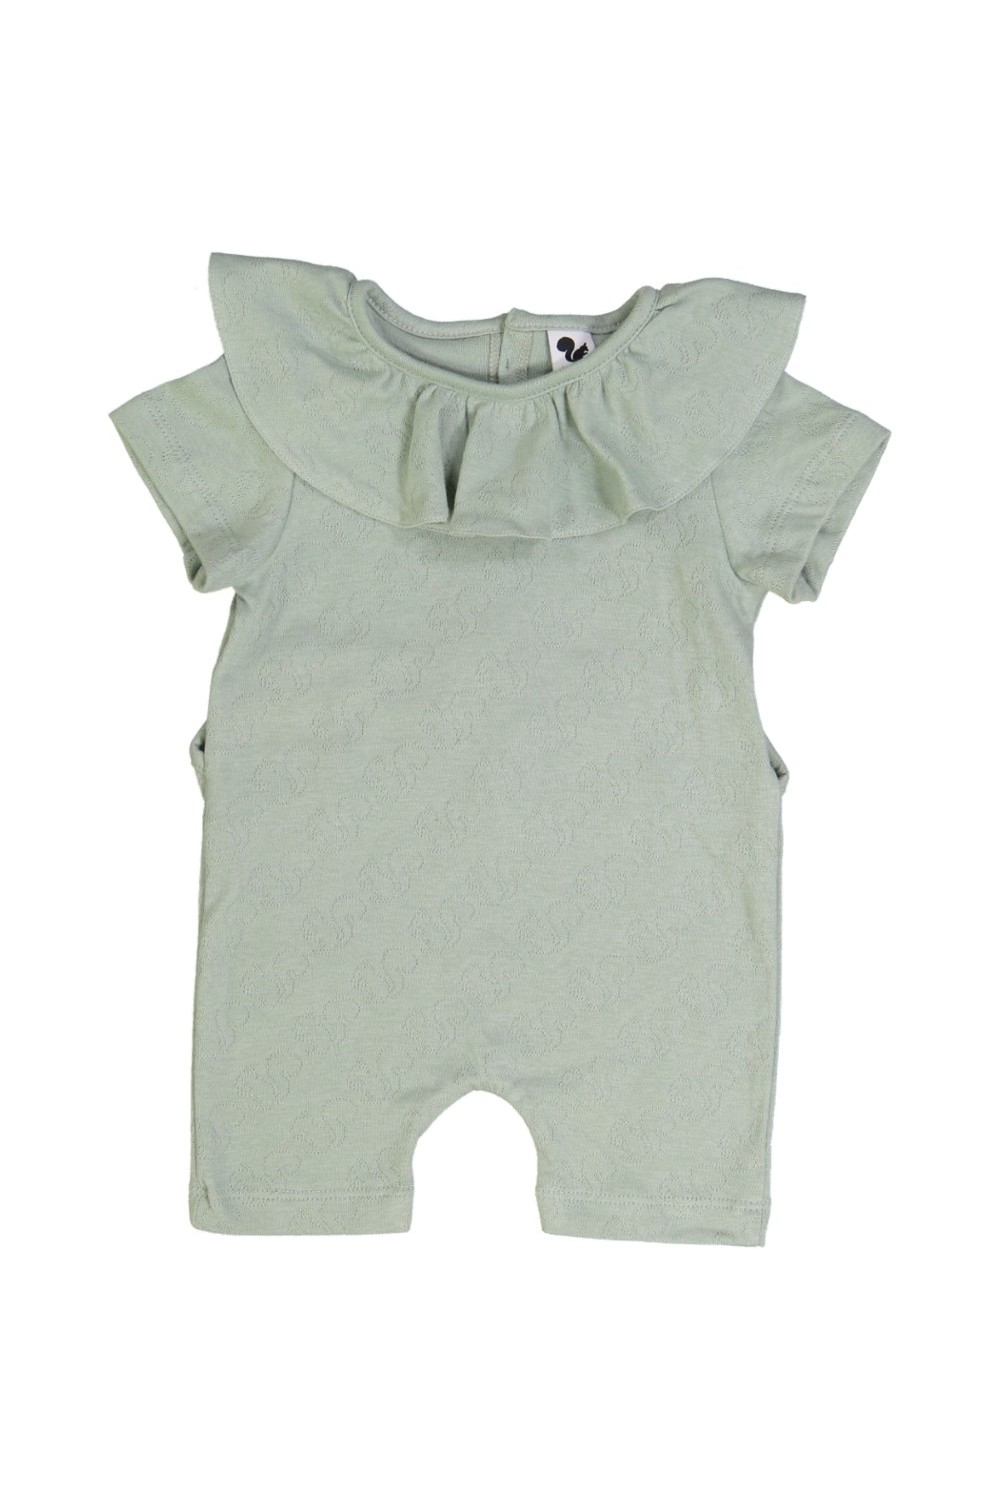 pyjama bébé eole vert jade coton bio